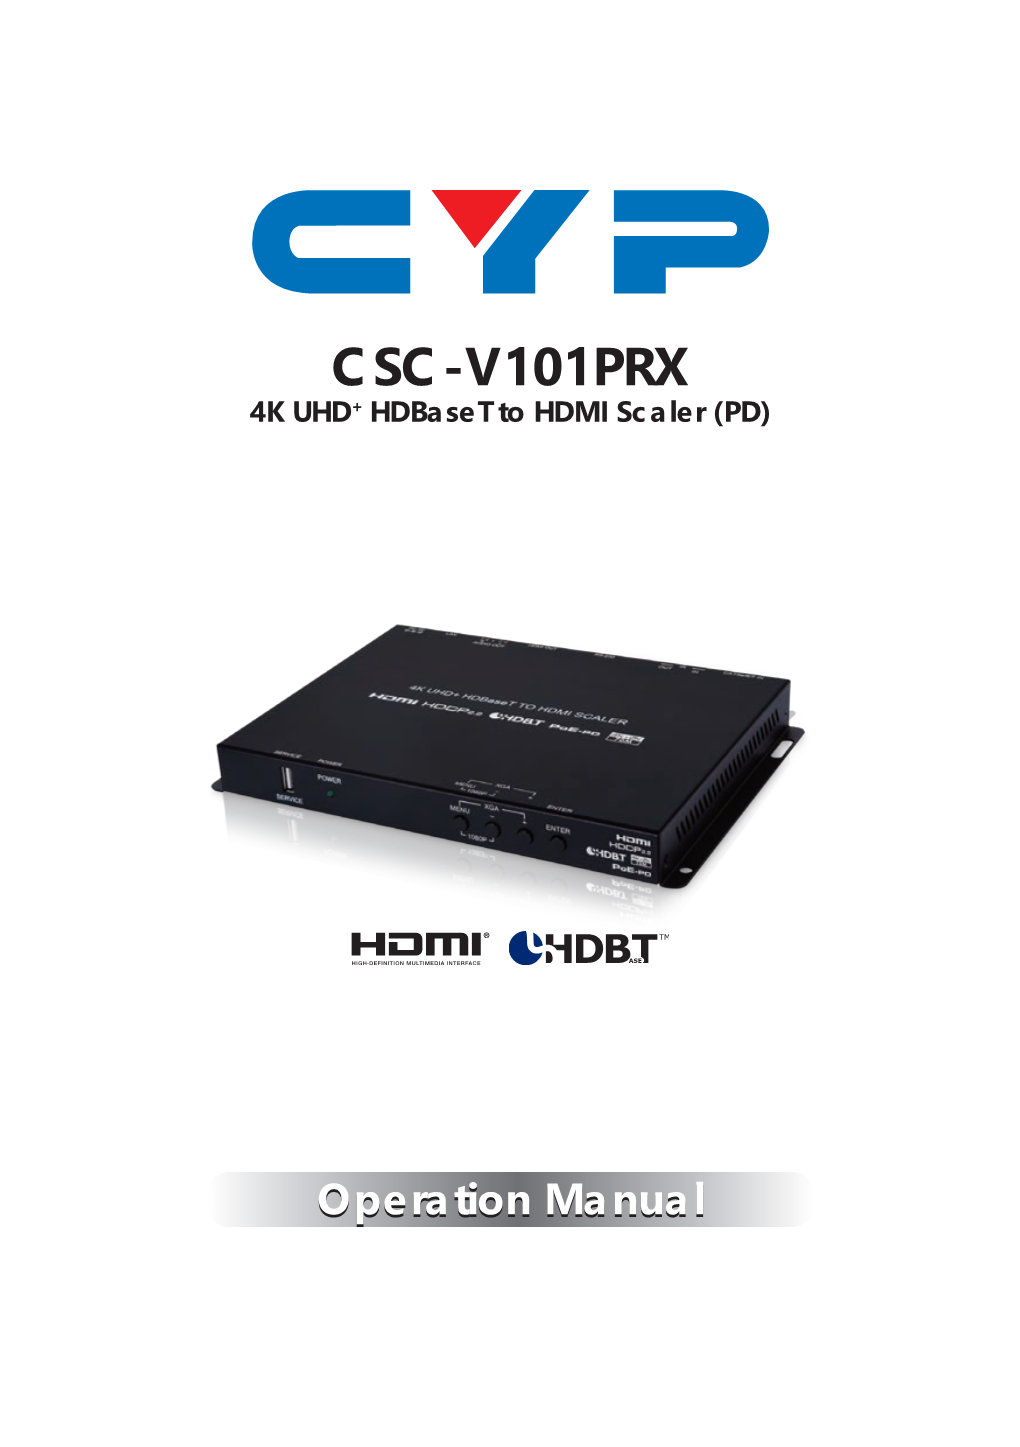 CSC-V101PRX 4K UHD+ Hdbaset to HDMI Scaler (PD)